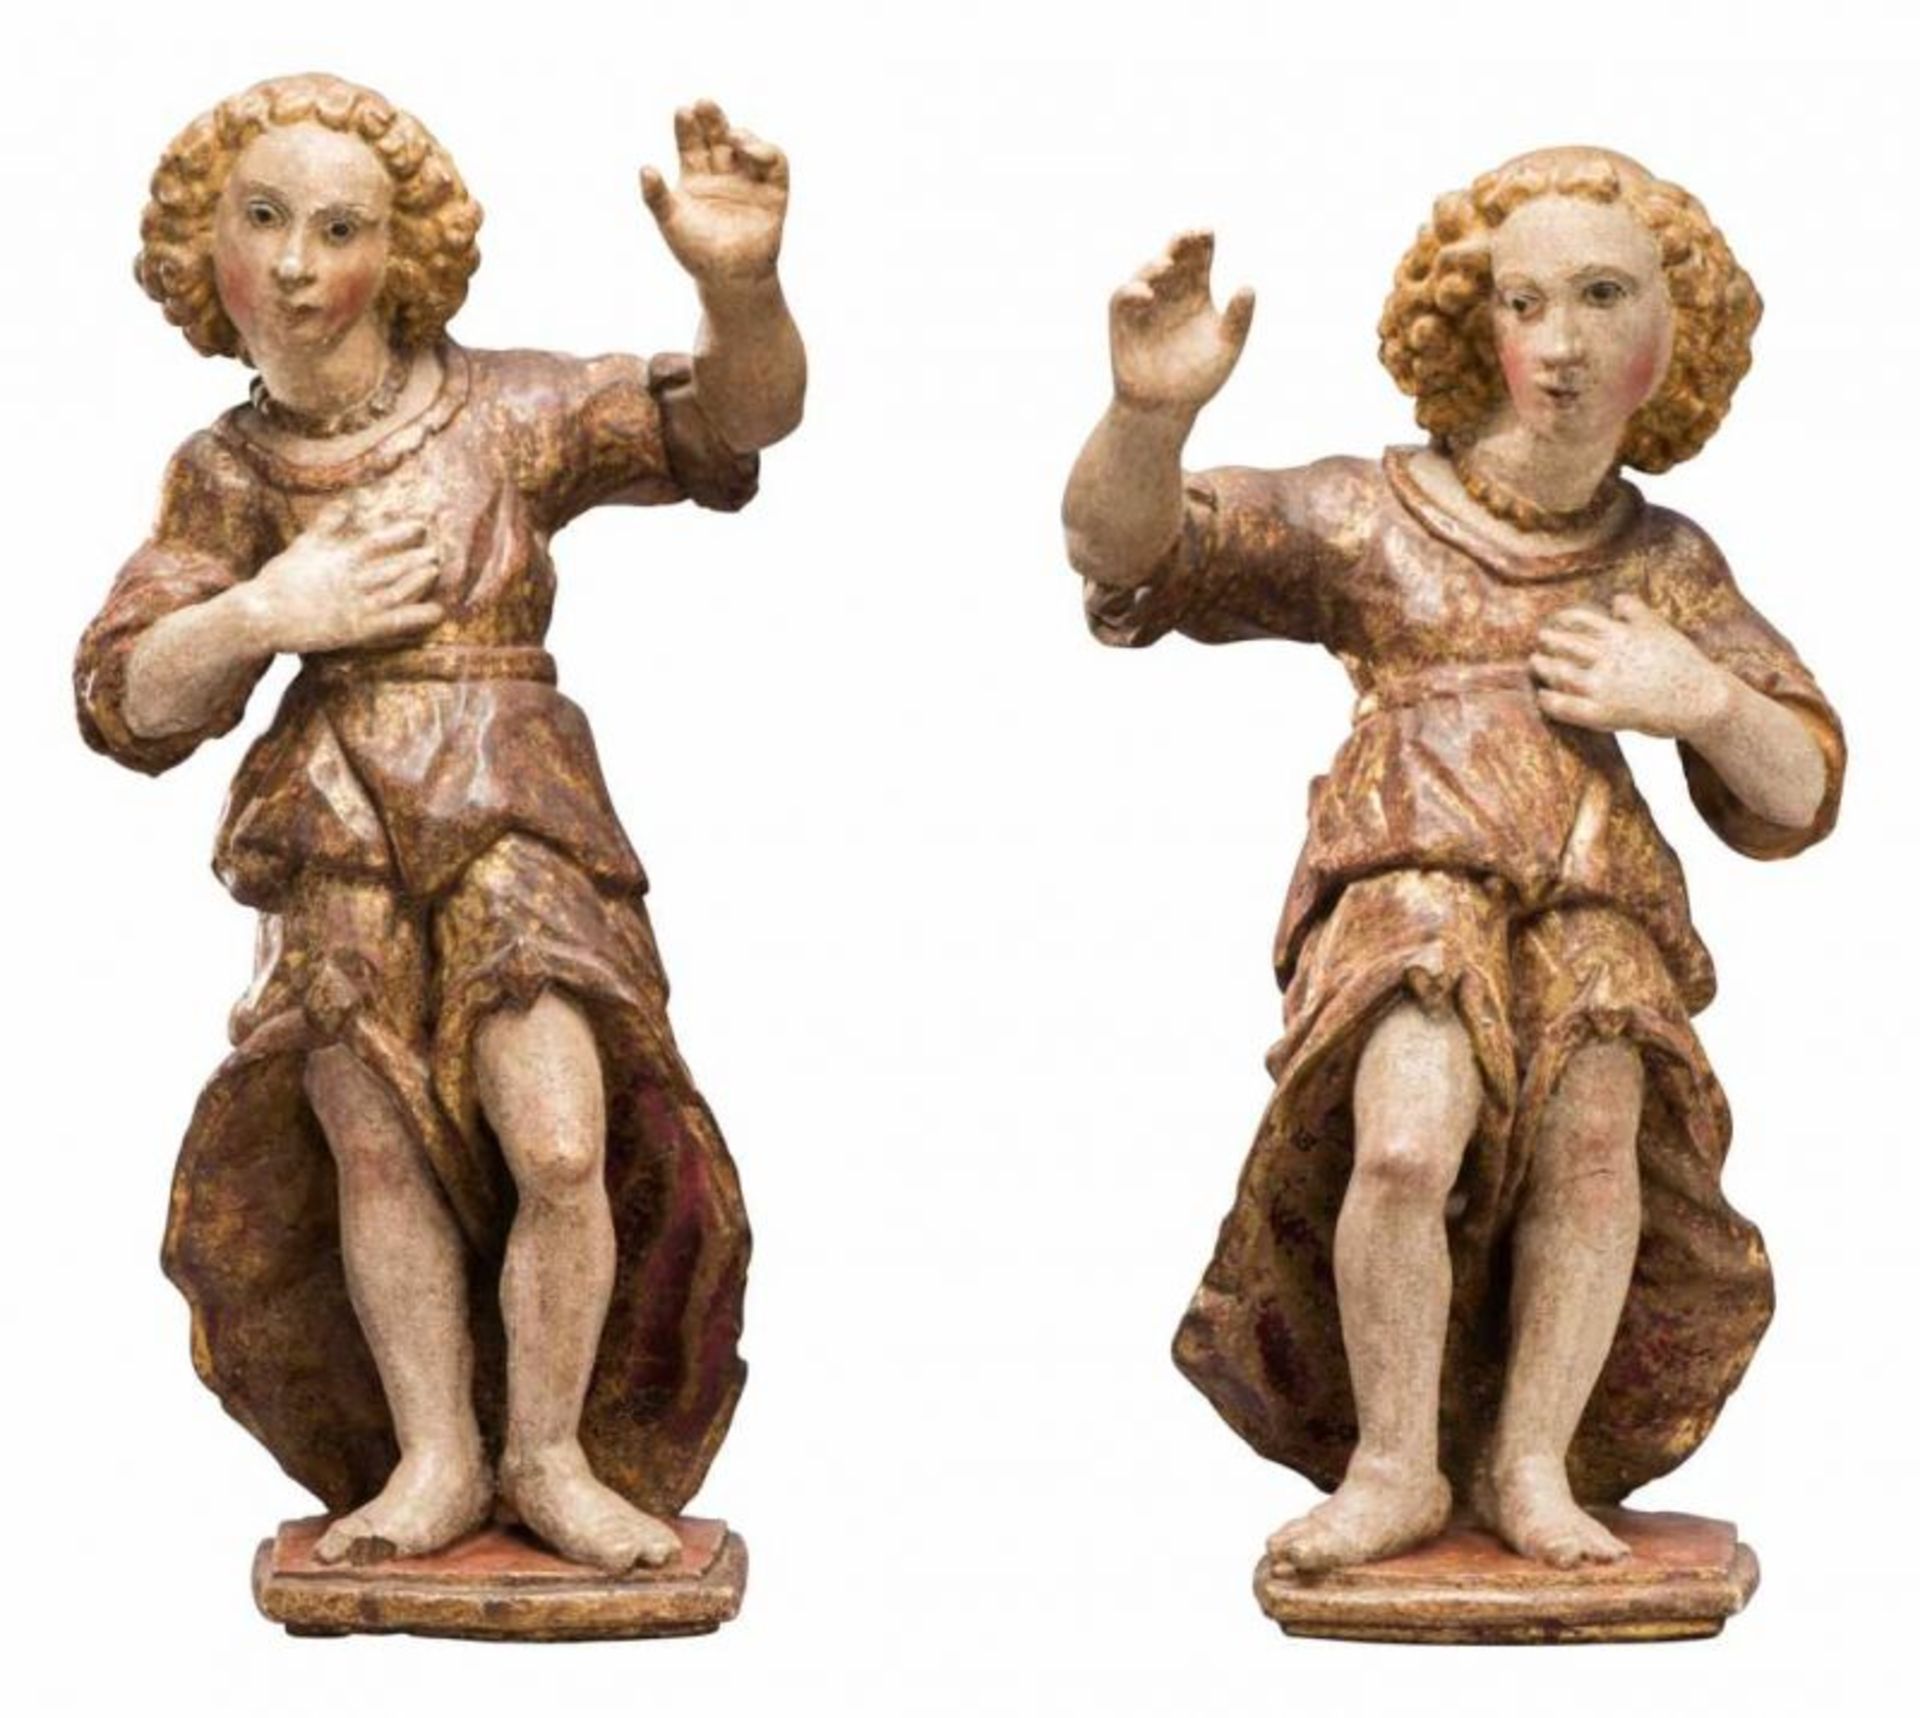 Paar Altarfiguren in goldenem Gewand Wohl Schweiz 18./19. Jh. Holz, vollrund geschnitzt, polychrom